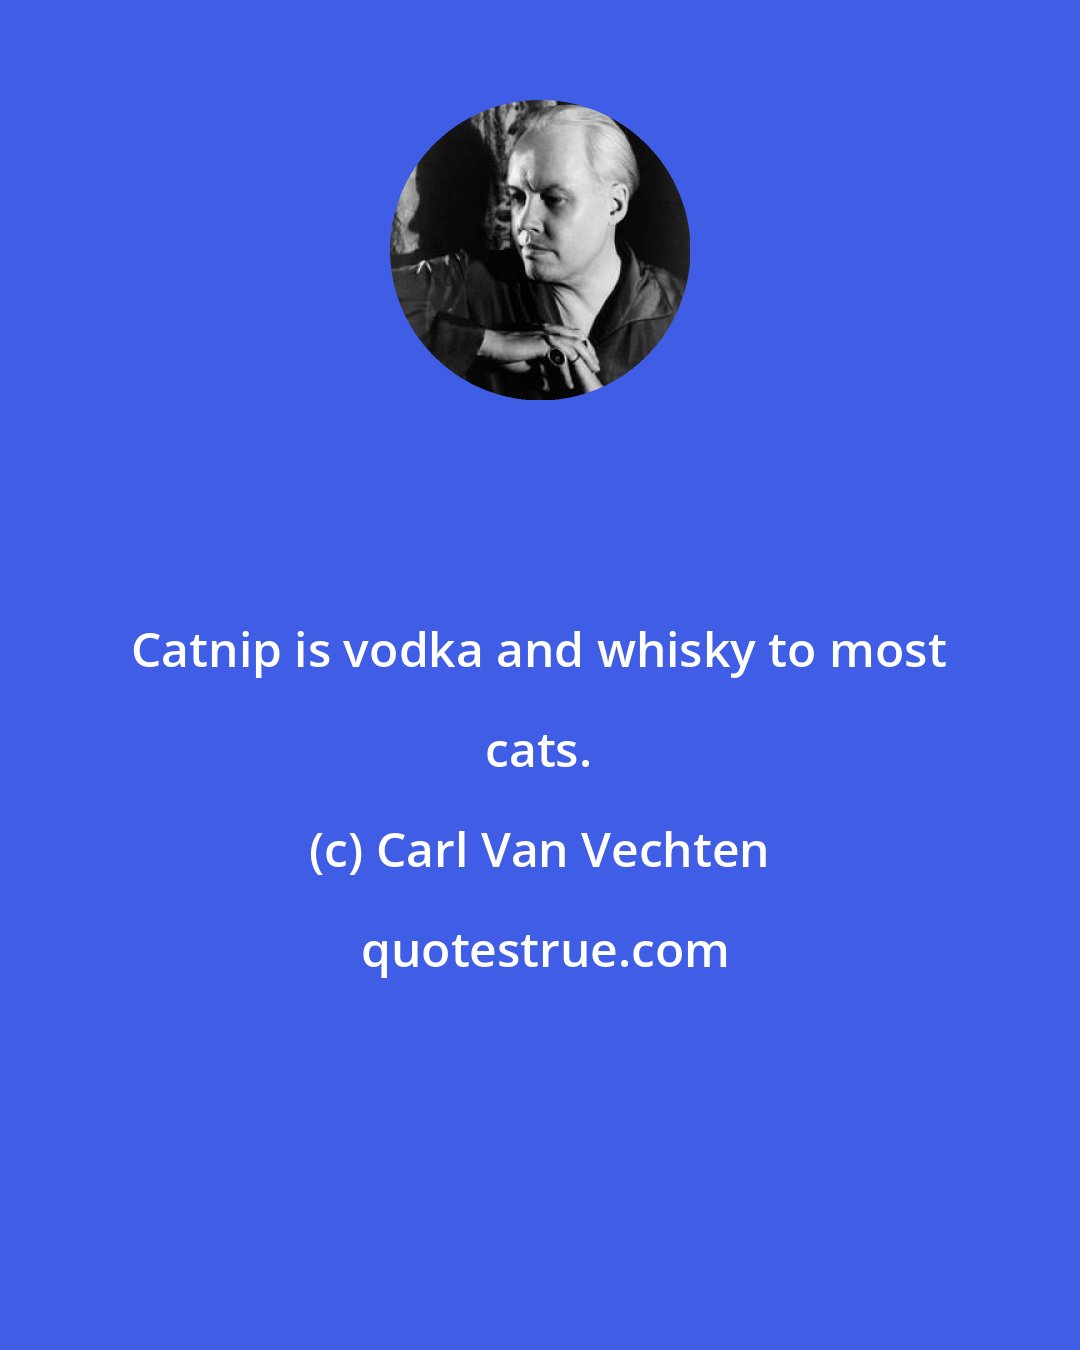 Carl Van Vechten: Catnip is vodka and whisky to most cats.